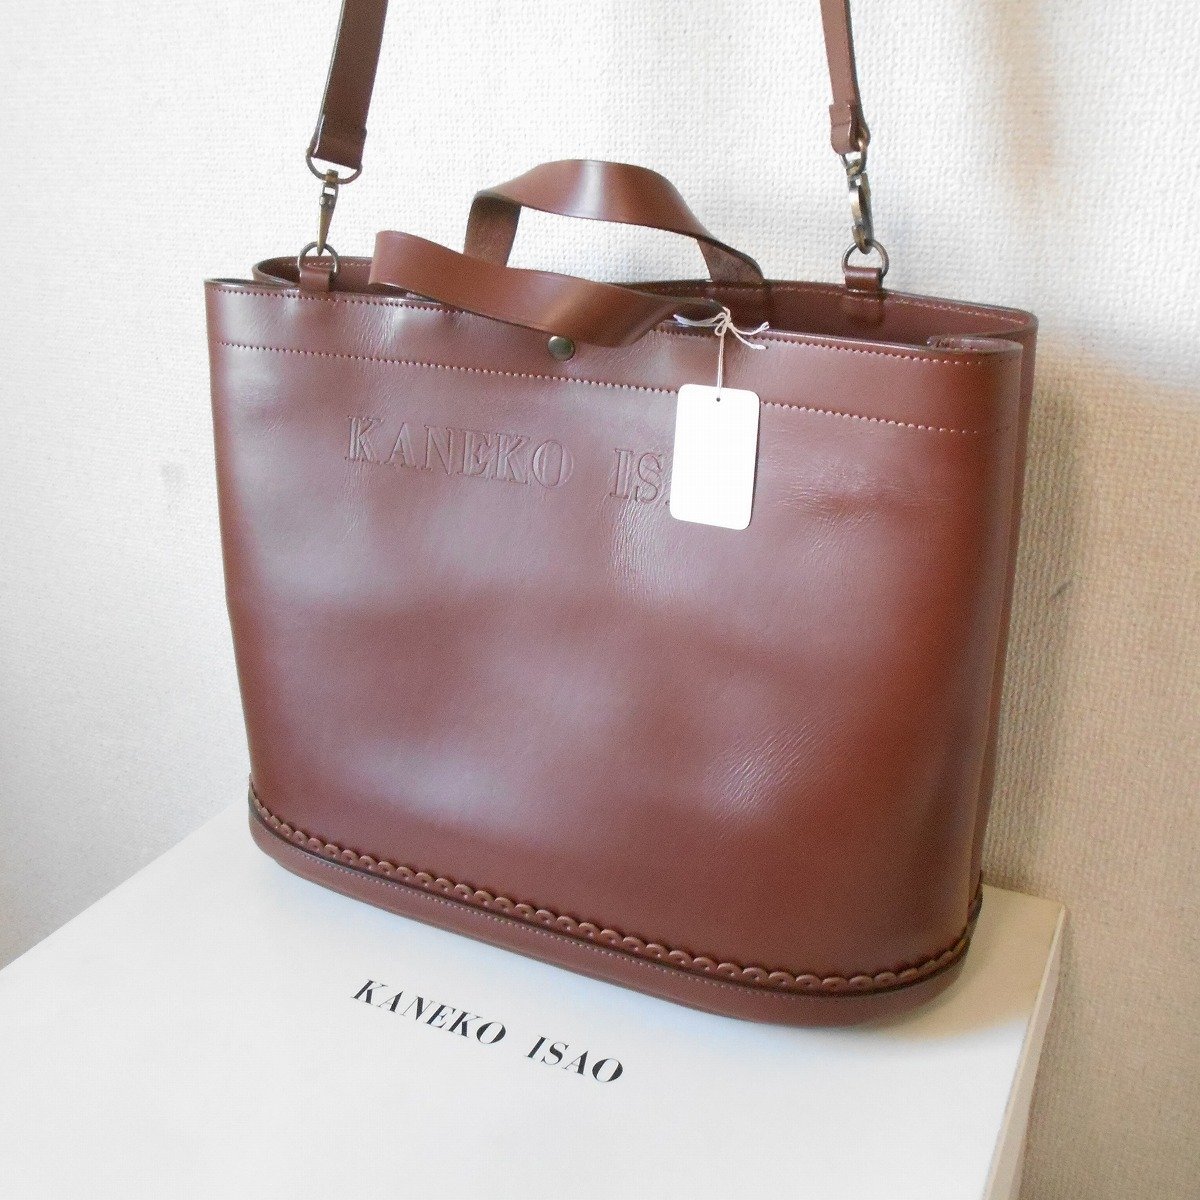  не использовался Kaneko Isao KANEKO ISAO натуральная кожа плечо имеется большая сумка Brown 